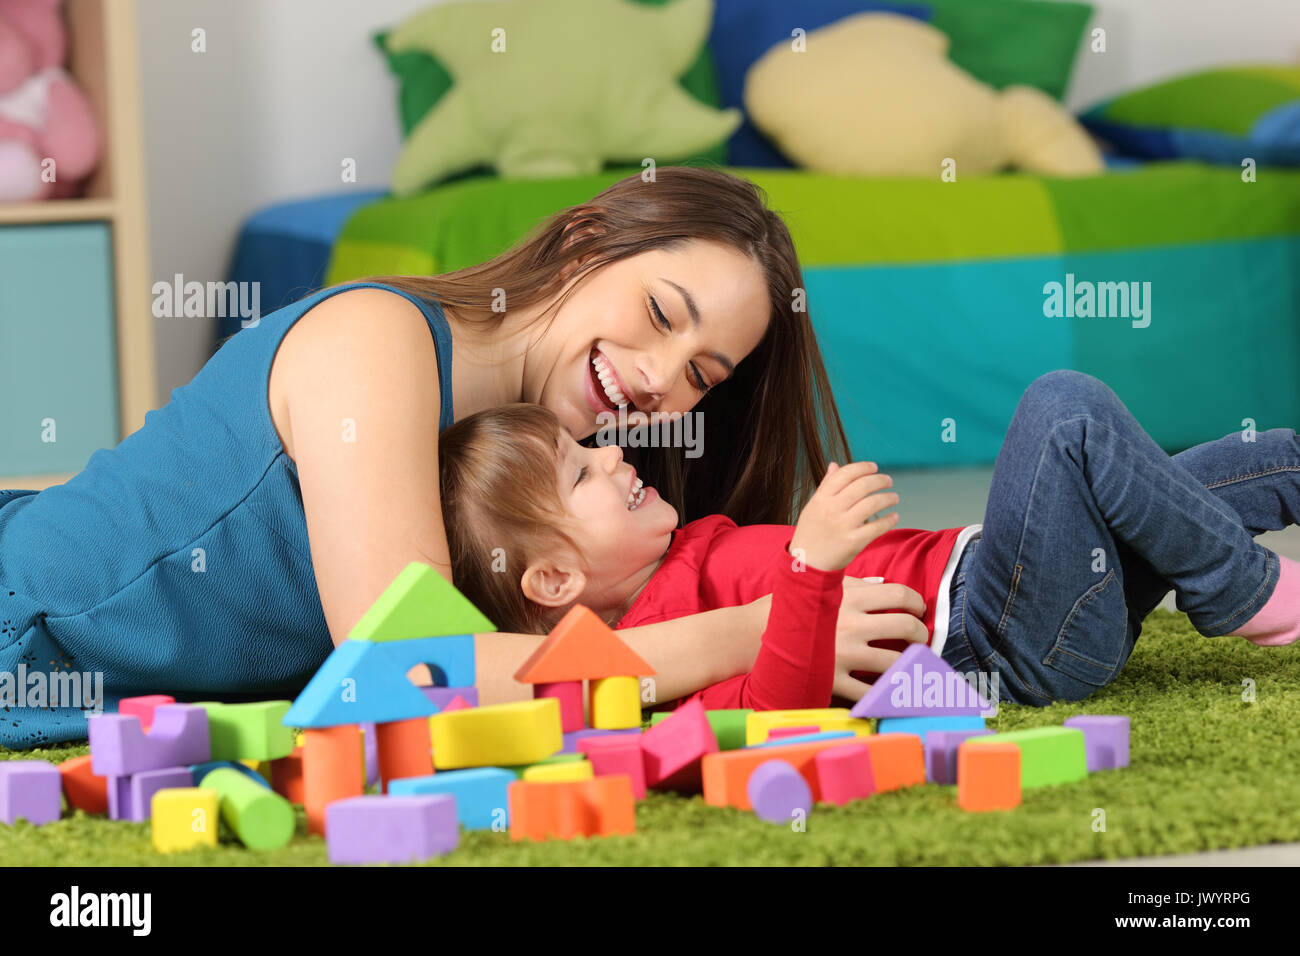 Mutter oder Kindermädchen spielen mit einem Kind auf dem Teppich in einem Zimmer zu Hause Stockfoto